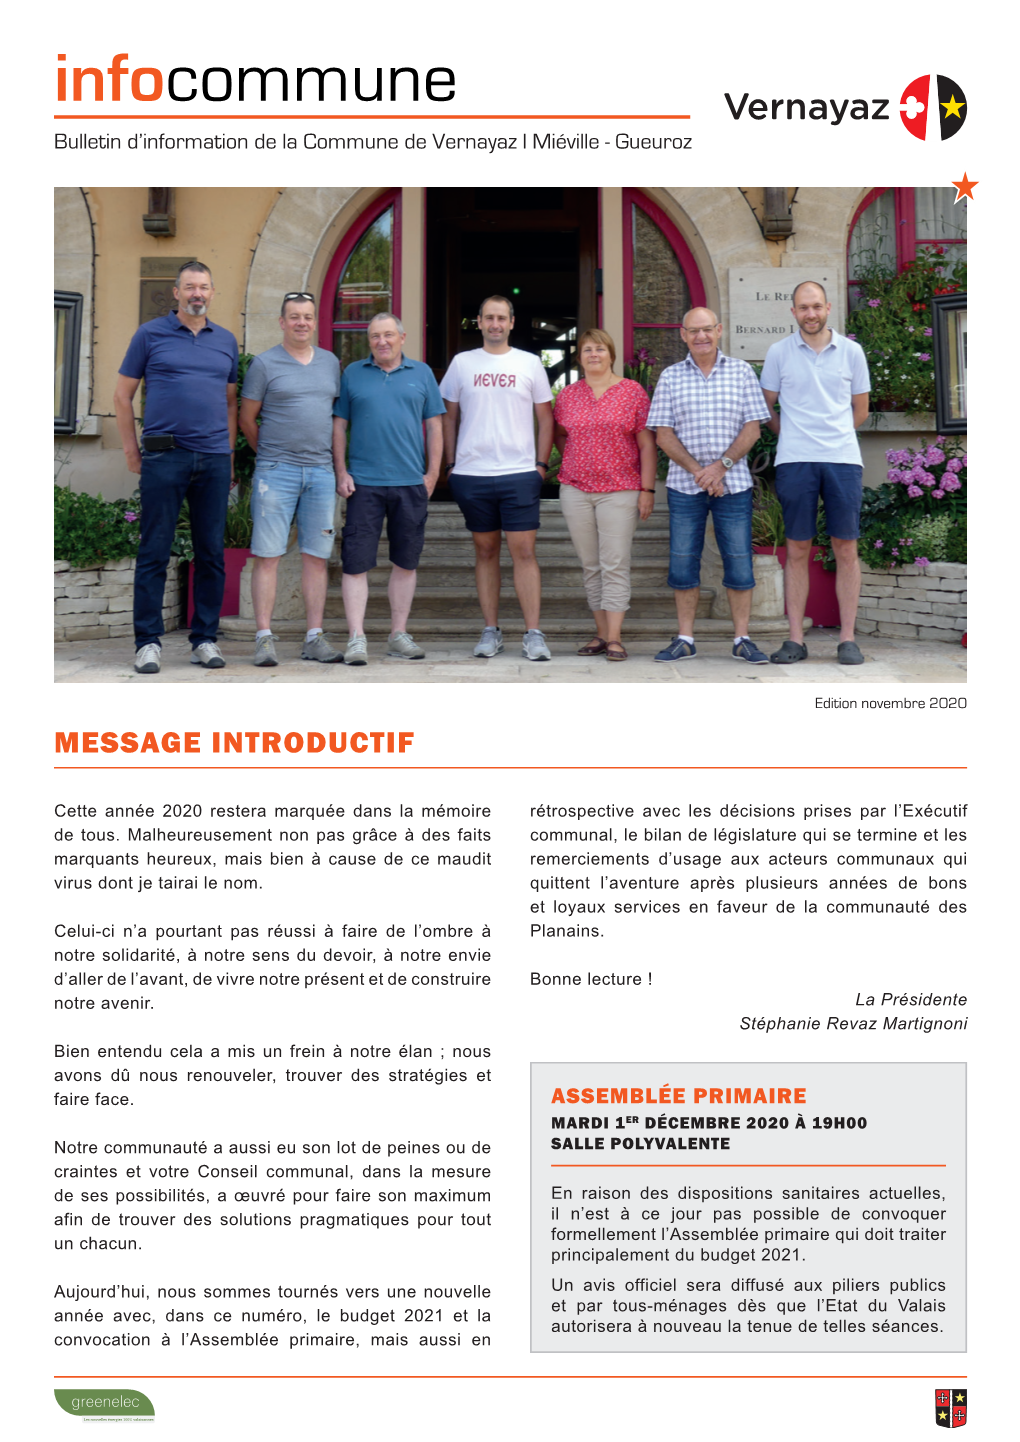 Infocommune Bulletin D’Information De La Commune De Vernayaz L Miéville - Gueuroz